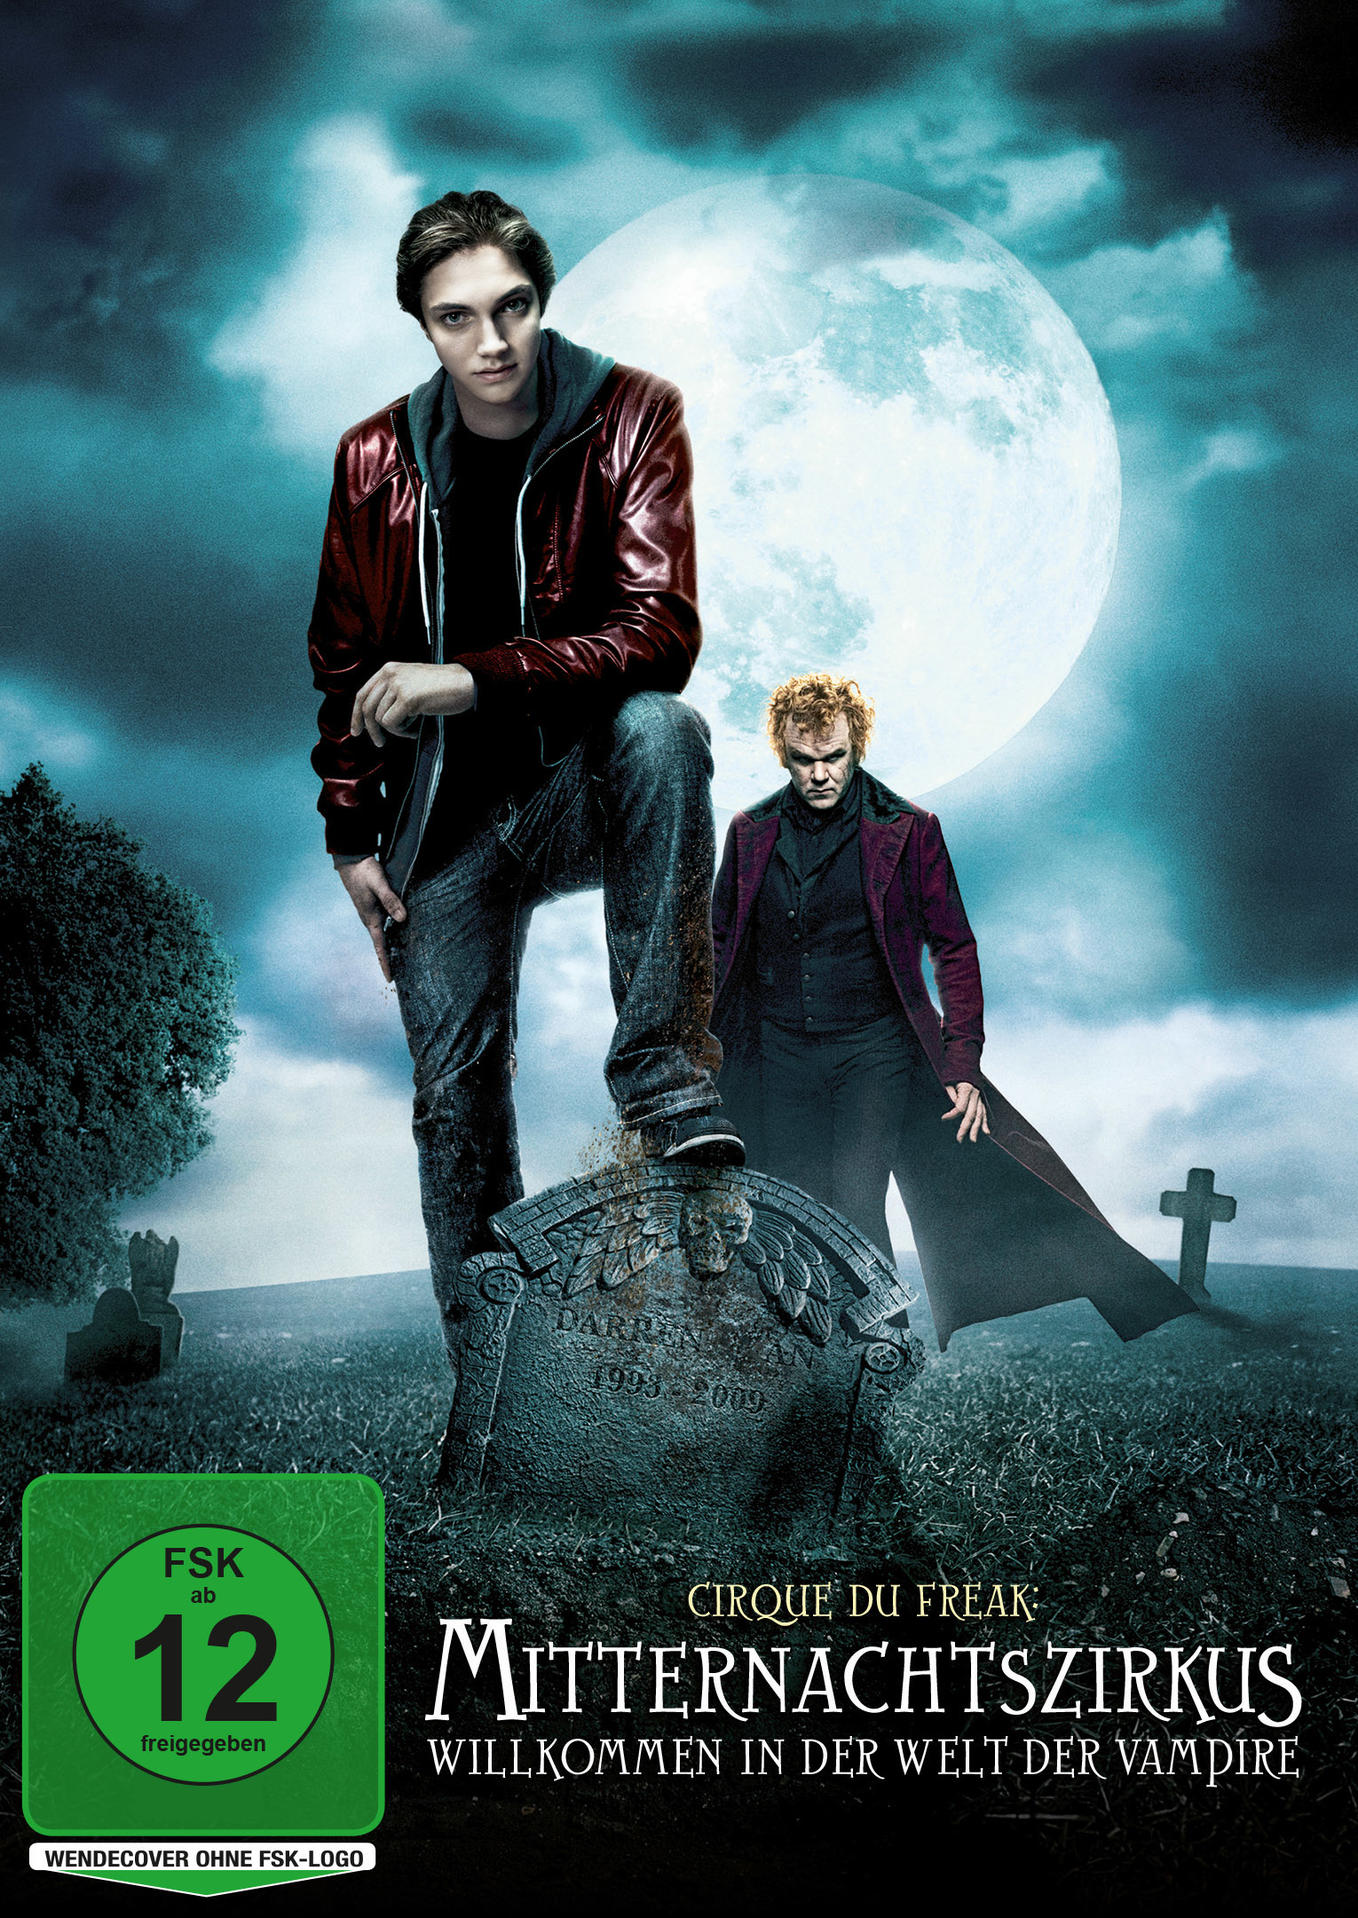 Mitternachtszirkus: Willkommen in DVD Vampire der Welt der